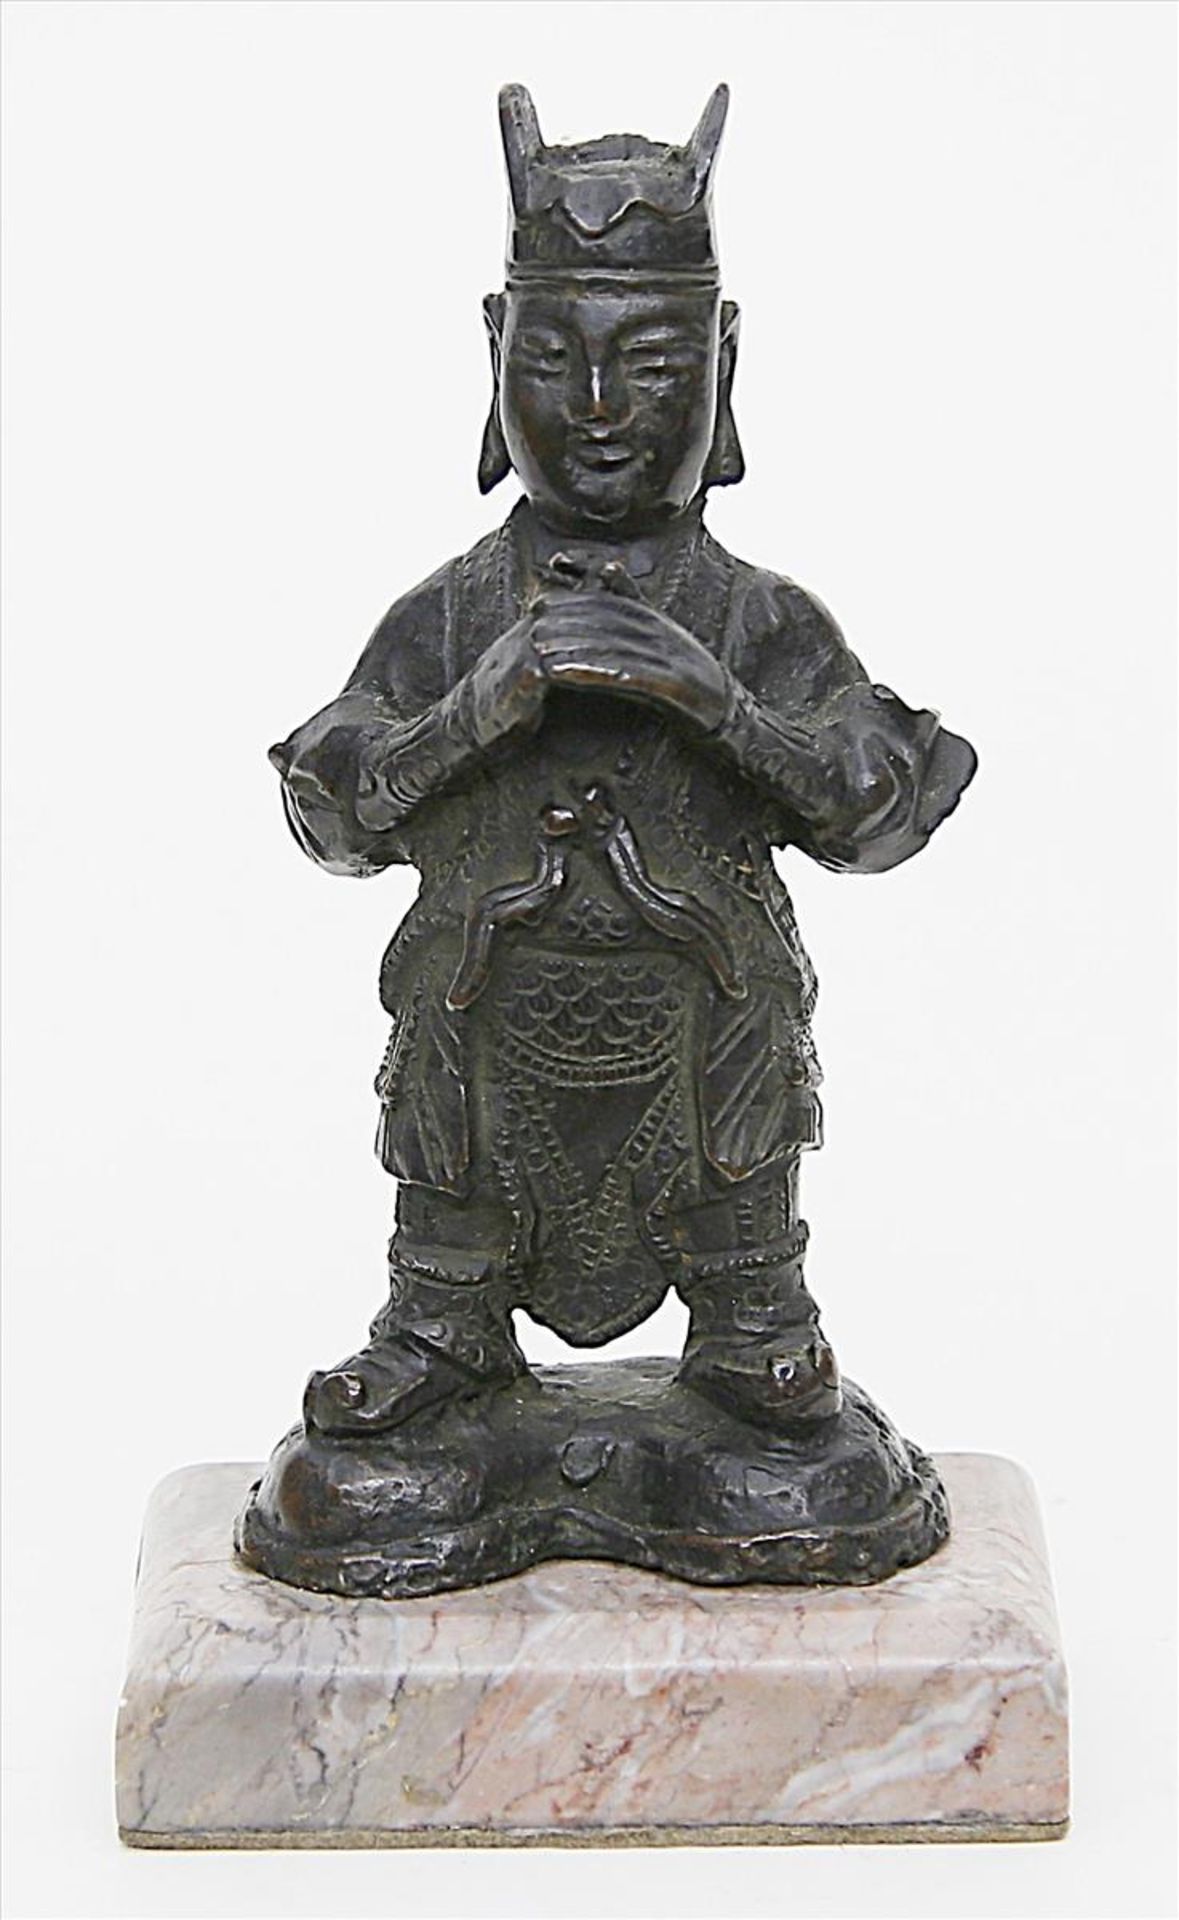 Stehende Wächterfigur.Bronze mit schwarz-brauner Patina. China, wohl 17./18. Jh. Jünger auf